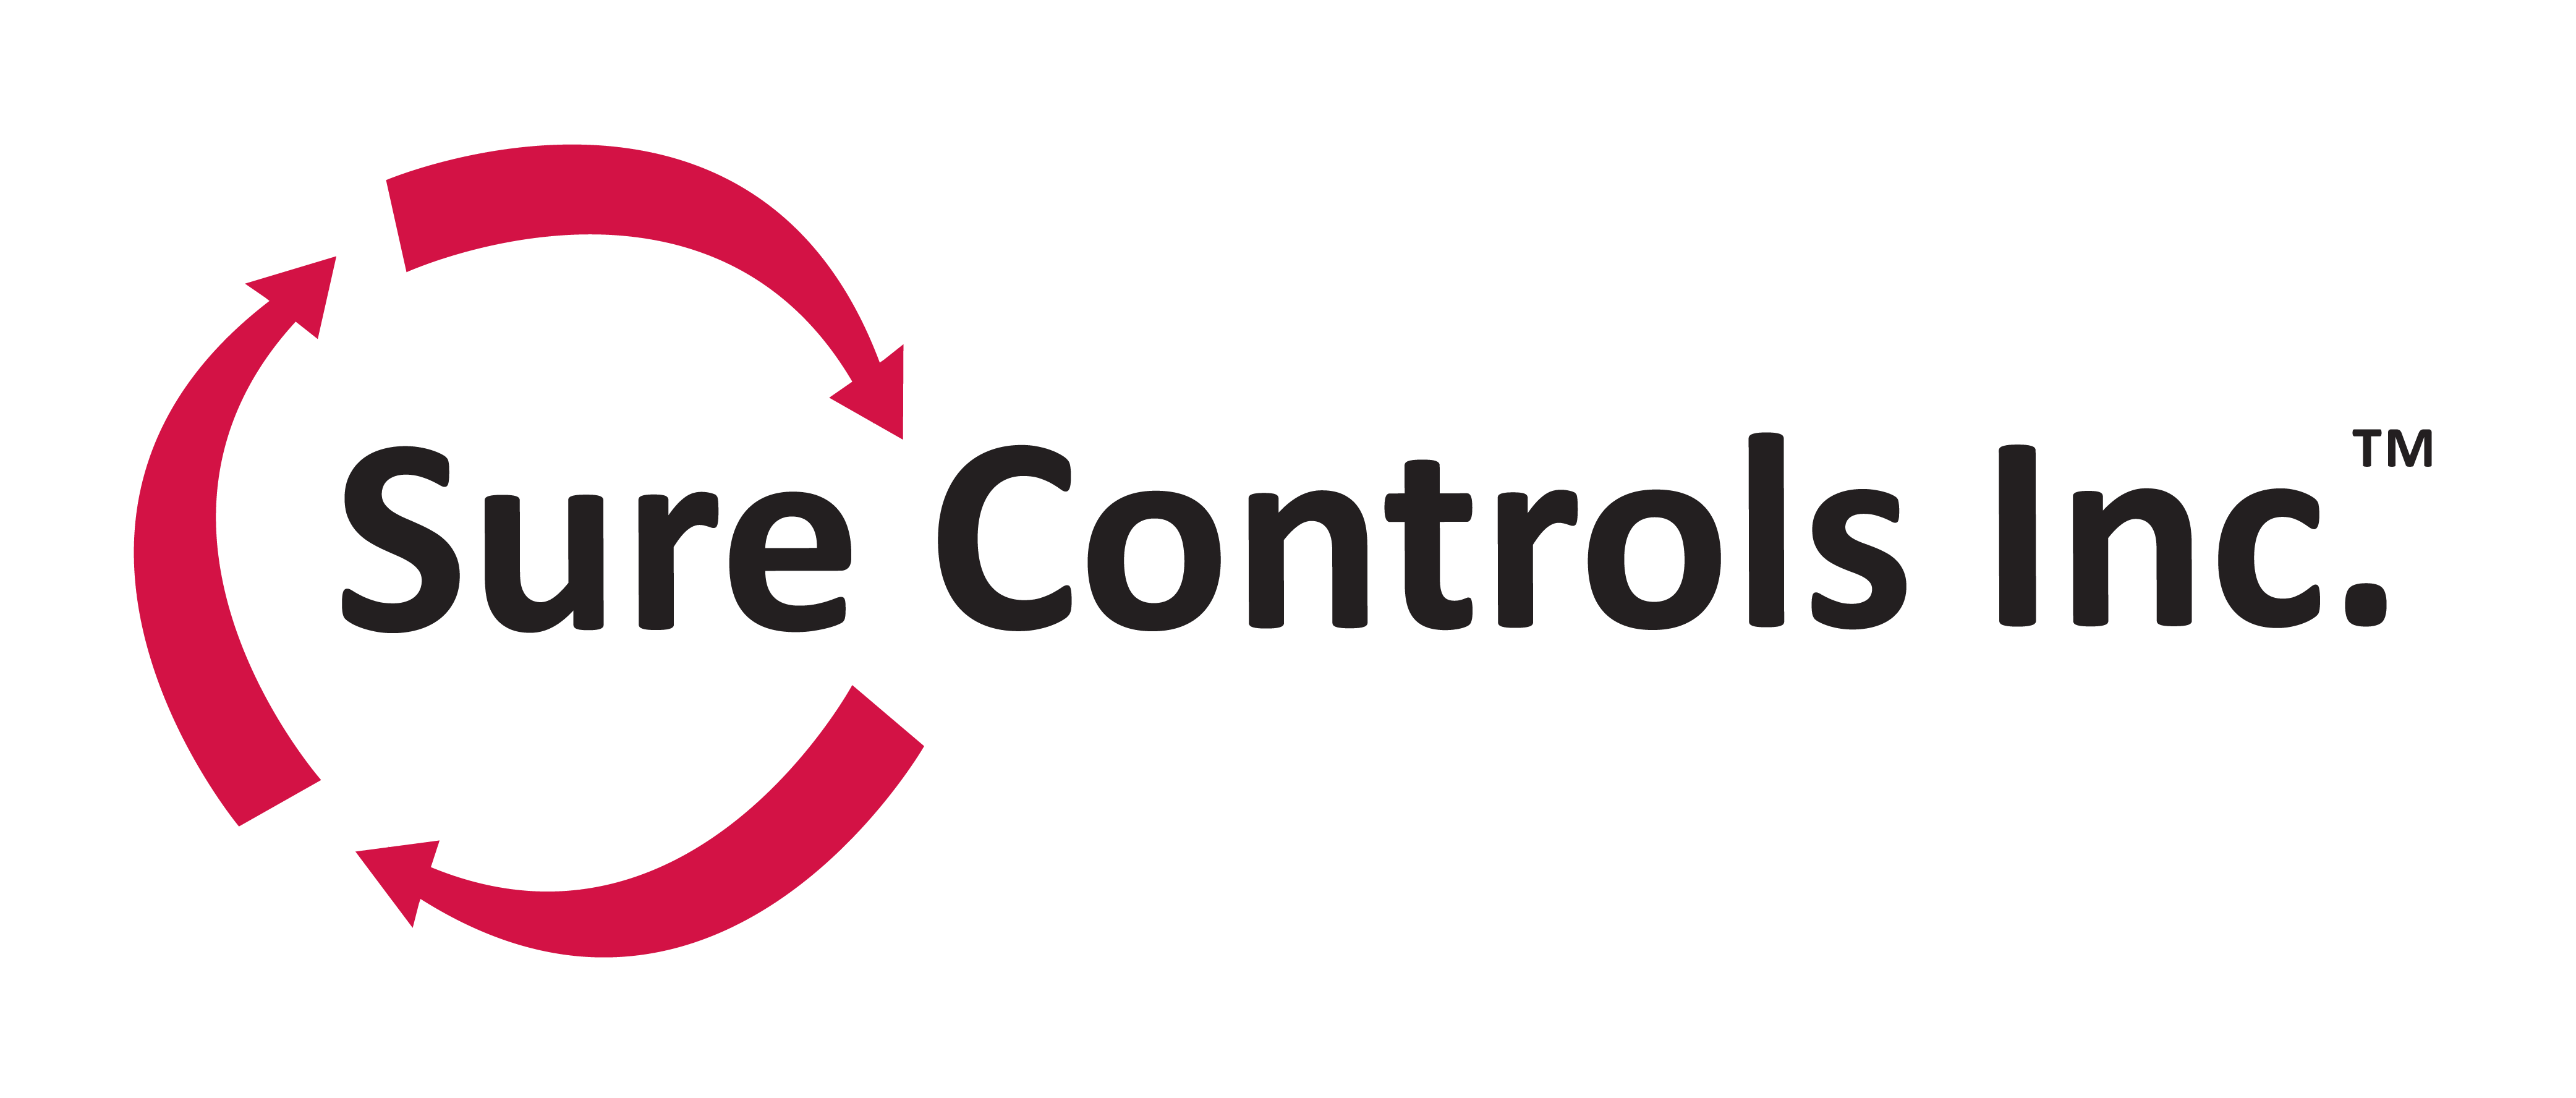 Sure Controls Inc